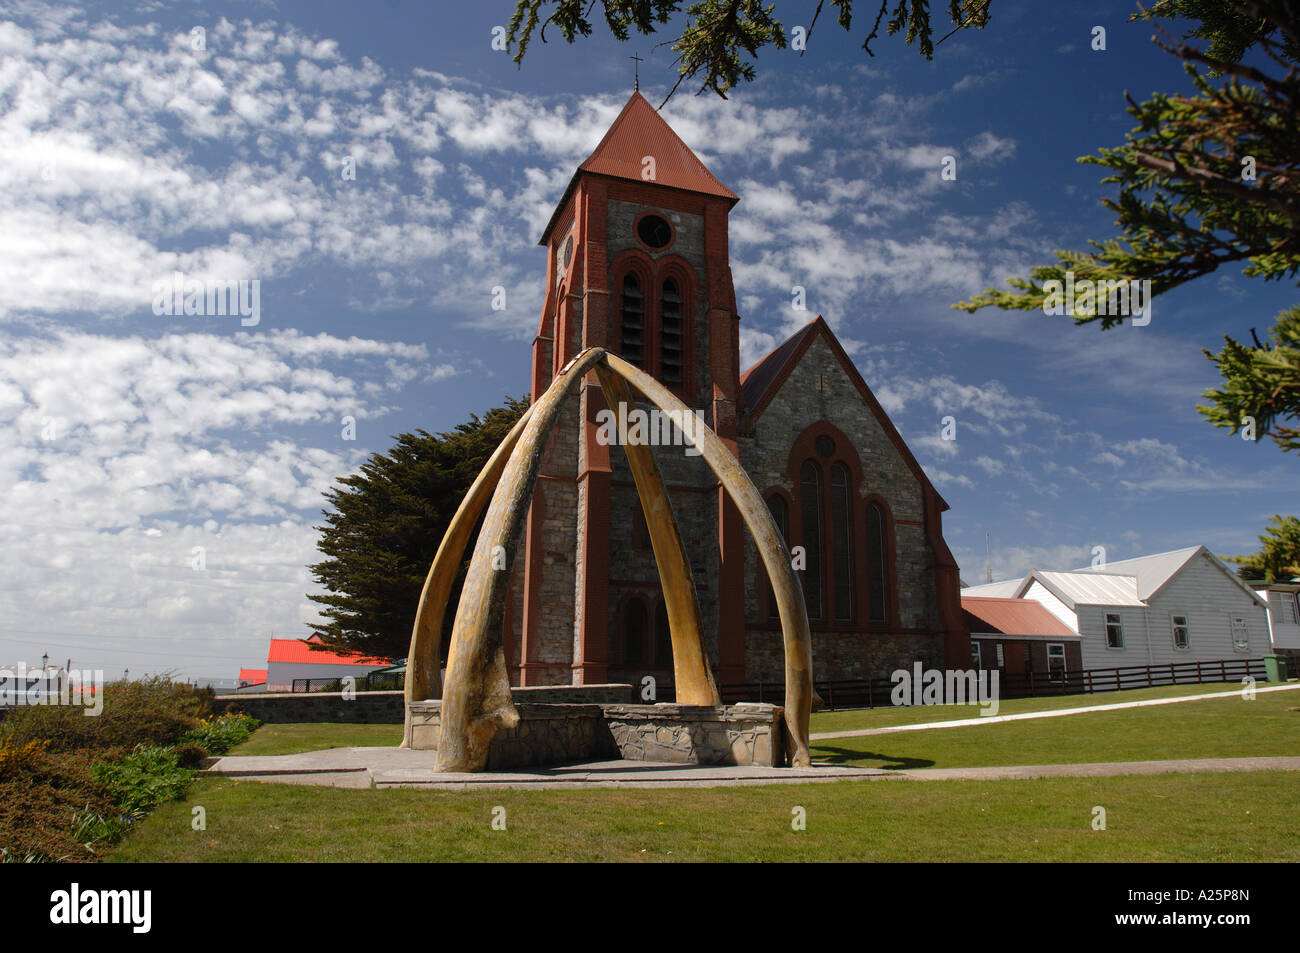 L'architecture arch os de baleine aux îles Falkland memorial ville port stanley squelette cathédrale bâtiment structure prière sainte Banque D'Images